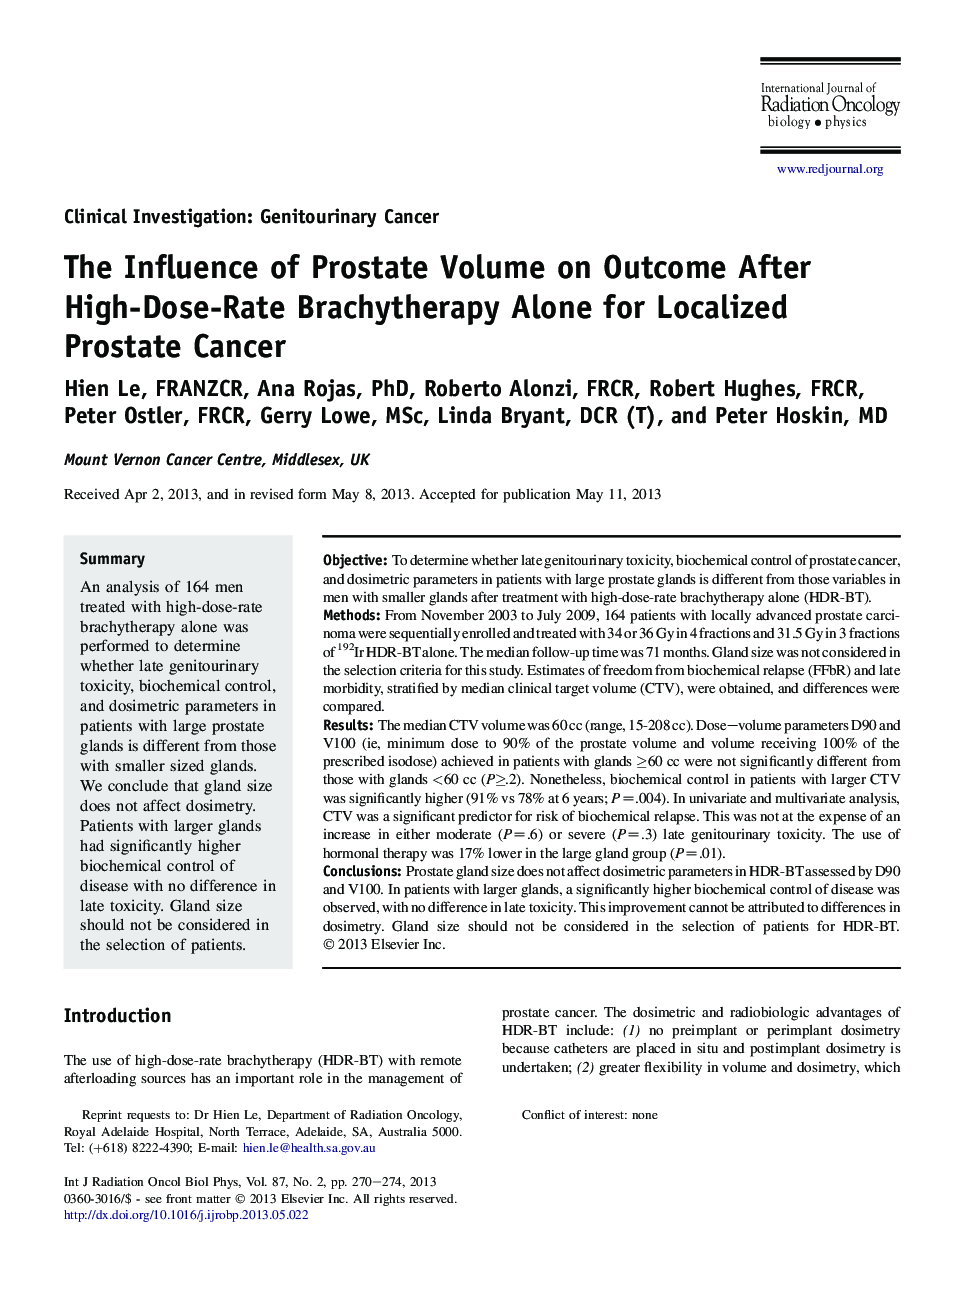 تأثیر حجم پروستات بر نتایج پس از برادری تراپی با دوز بالا به تنهایی برای سرطان پروستات محلی 